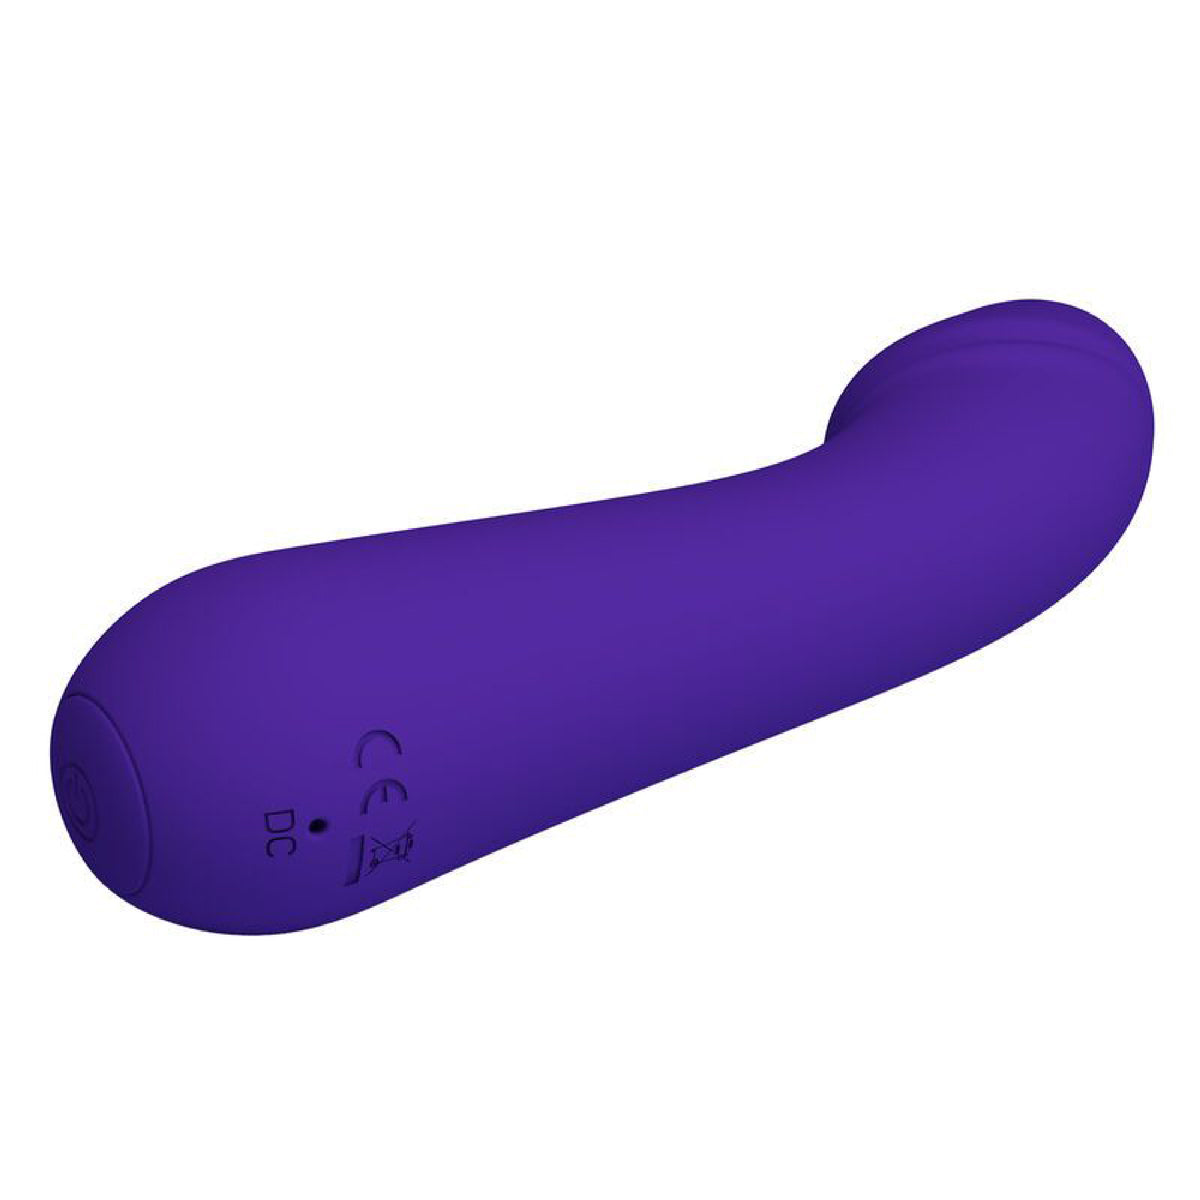 Cetus Rechargeable Vibrator - Purple